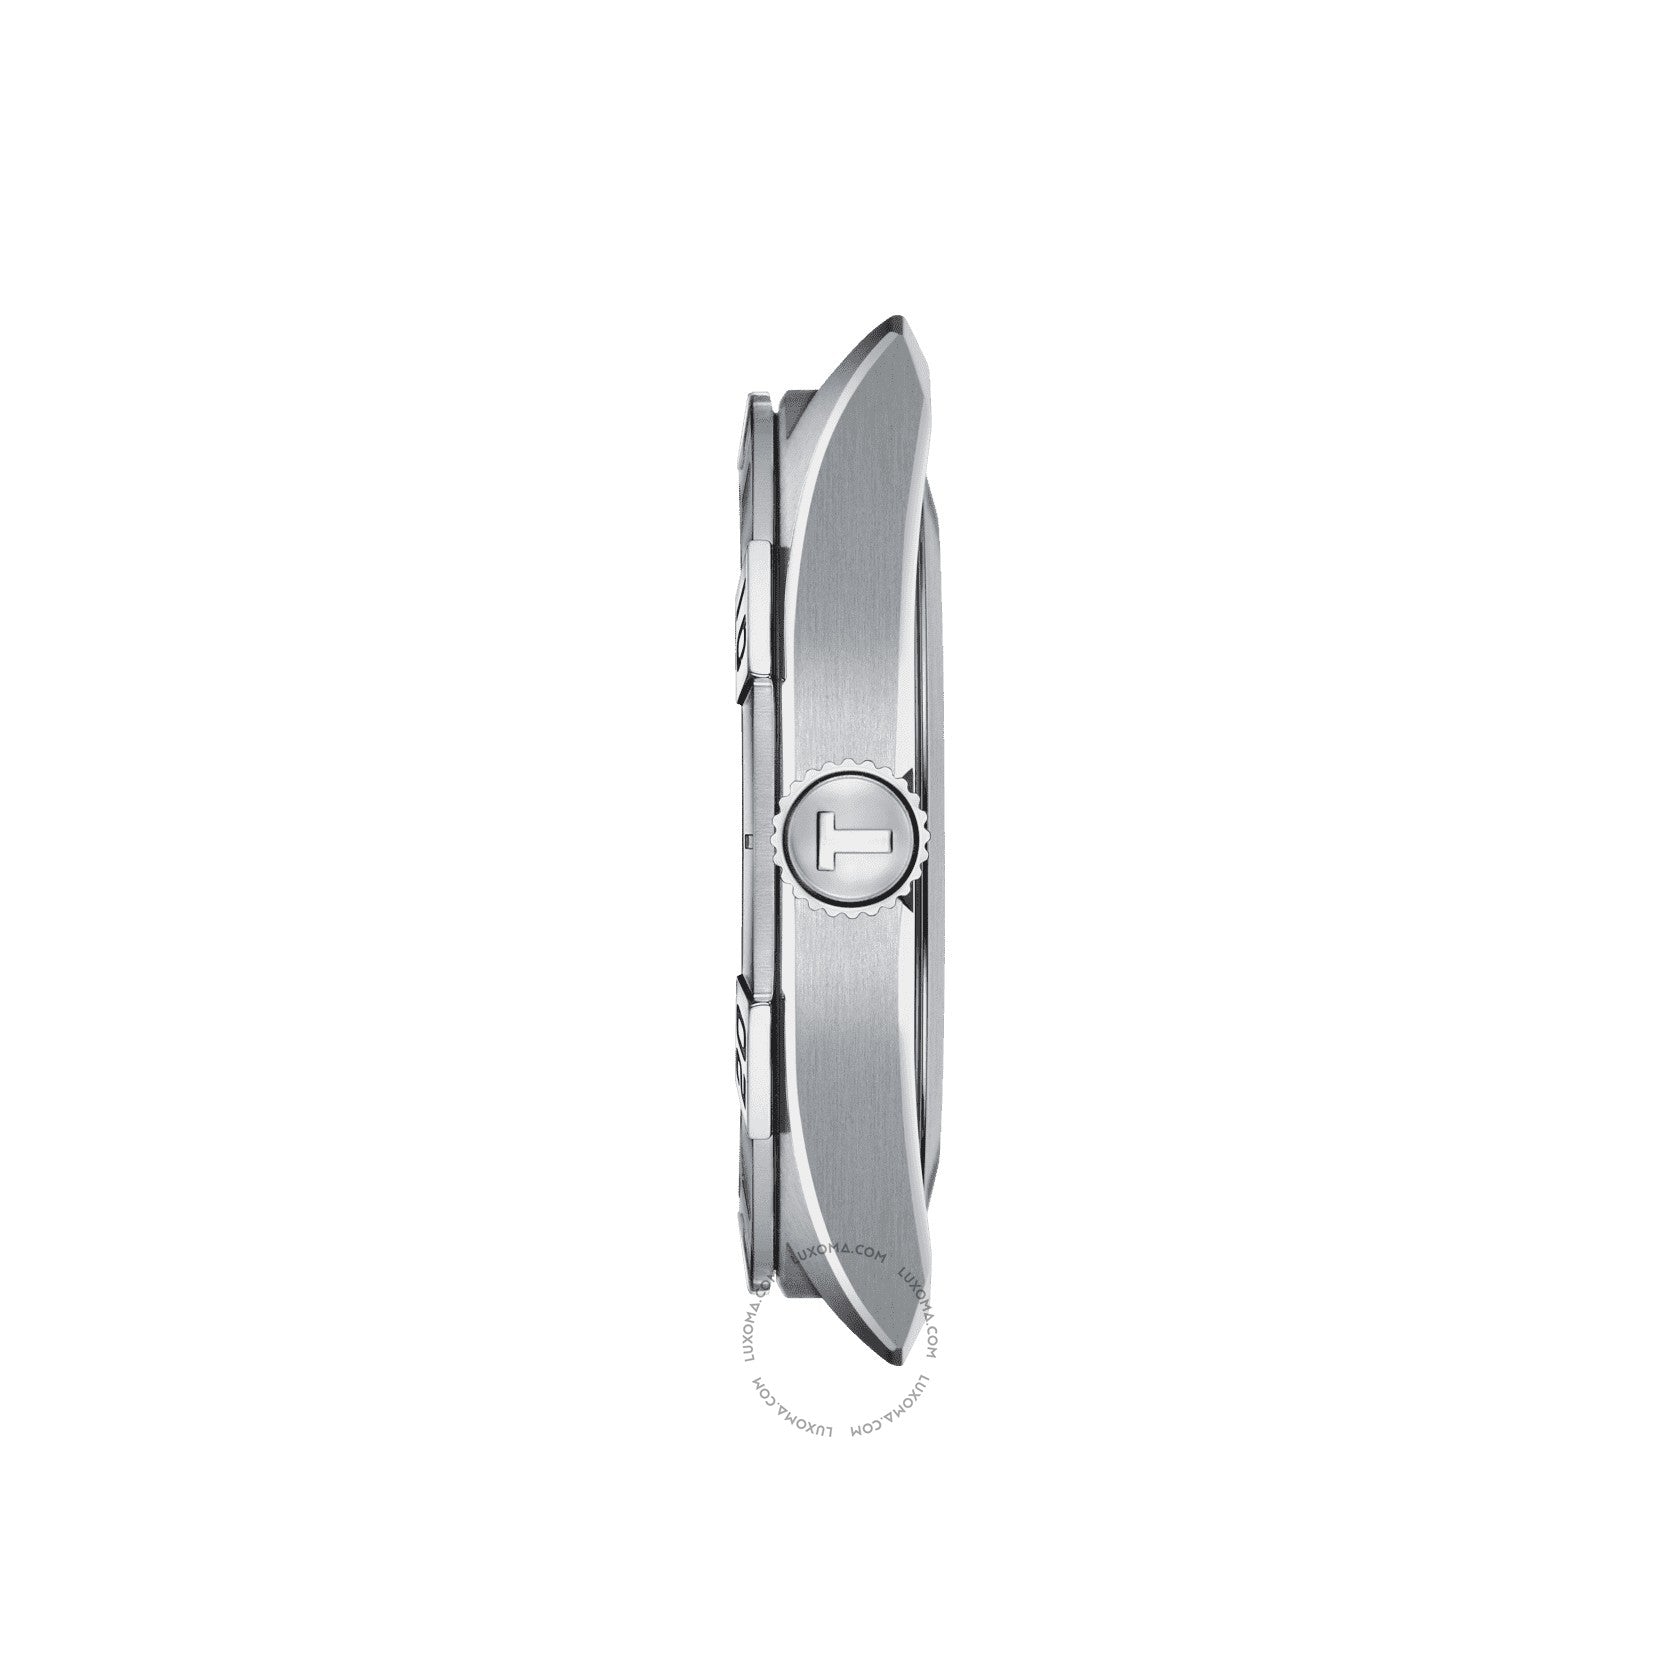 Tissot Tissot T-Classic Quartz Black Dial Men's Watch T101.610.16.051.00